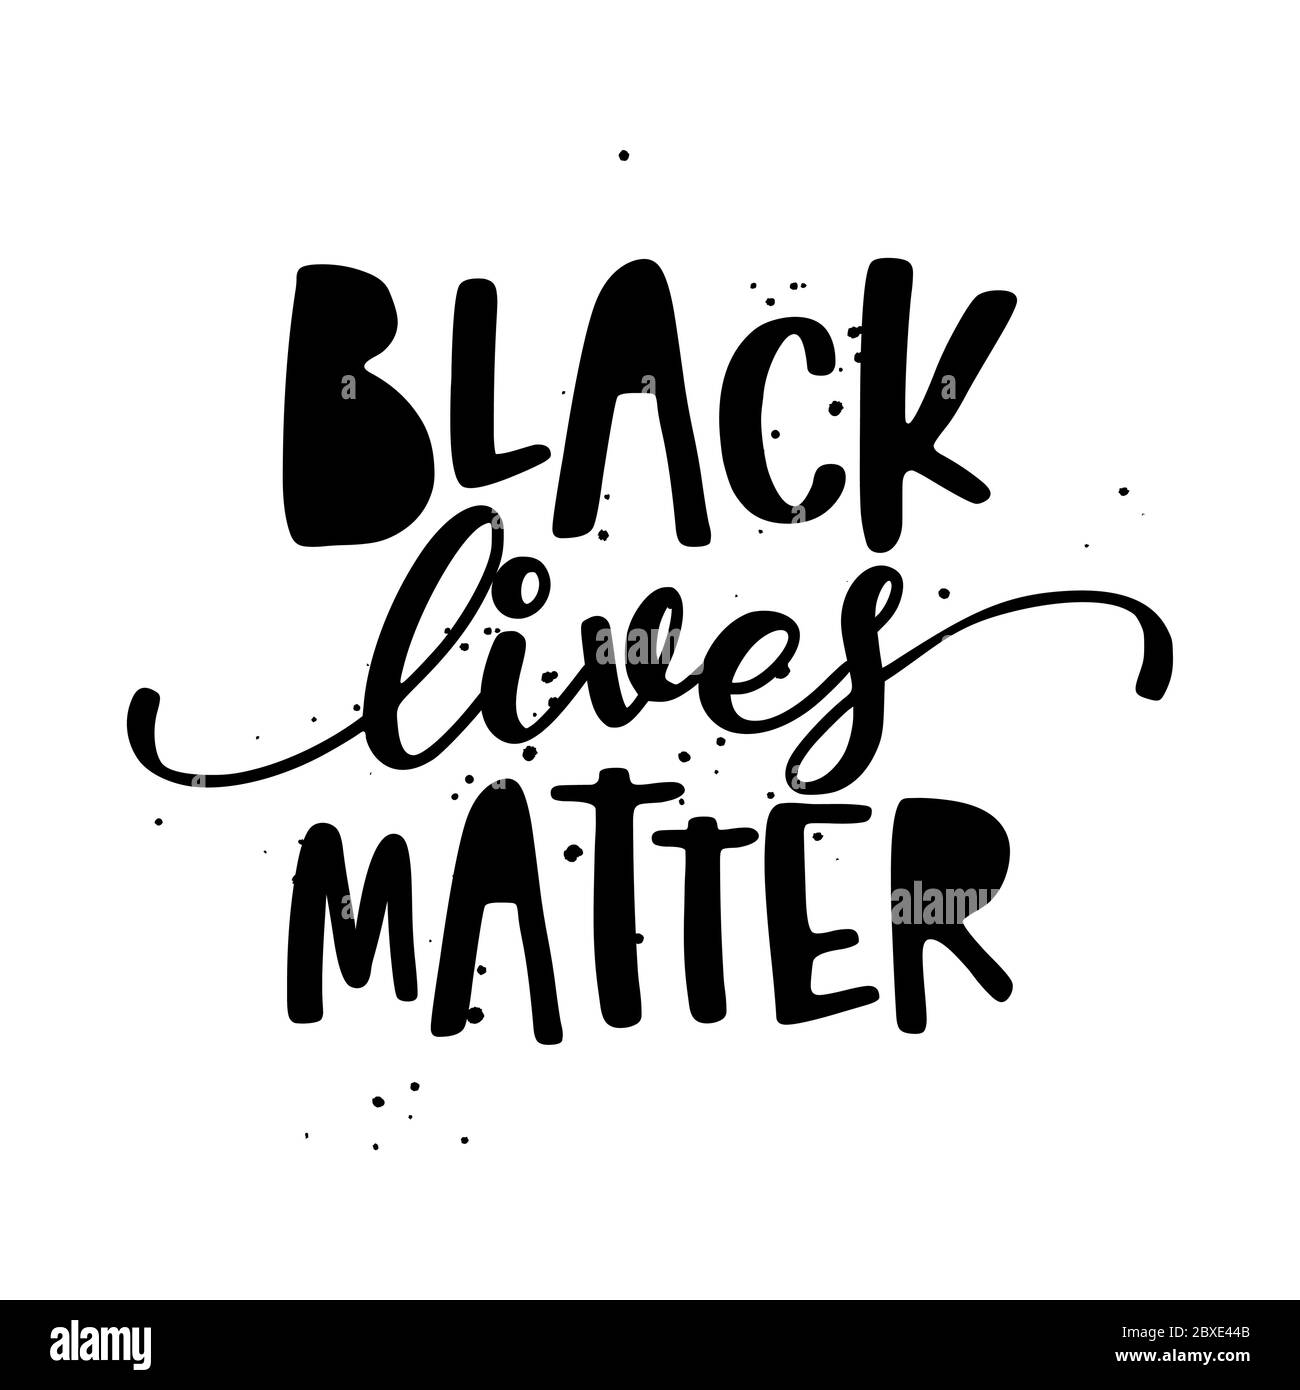 Las vidas negras importan - parar el racismo, eslogan encantador contra la discriminación. Caligrafía moderna con señal de stop. Bueno para la reserva de chatarra, carteles, textiles, Ilustración del Vector